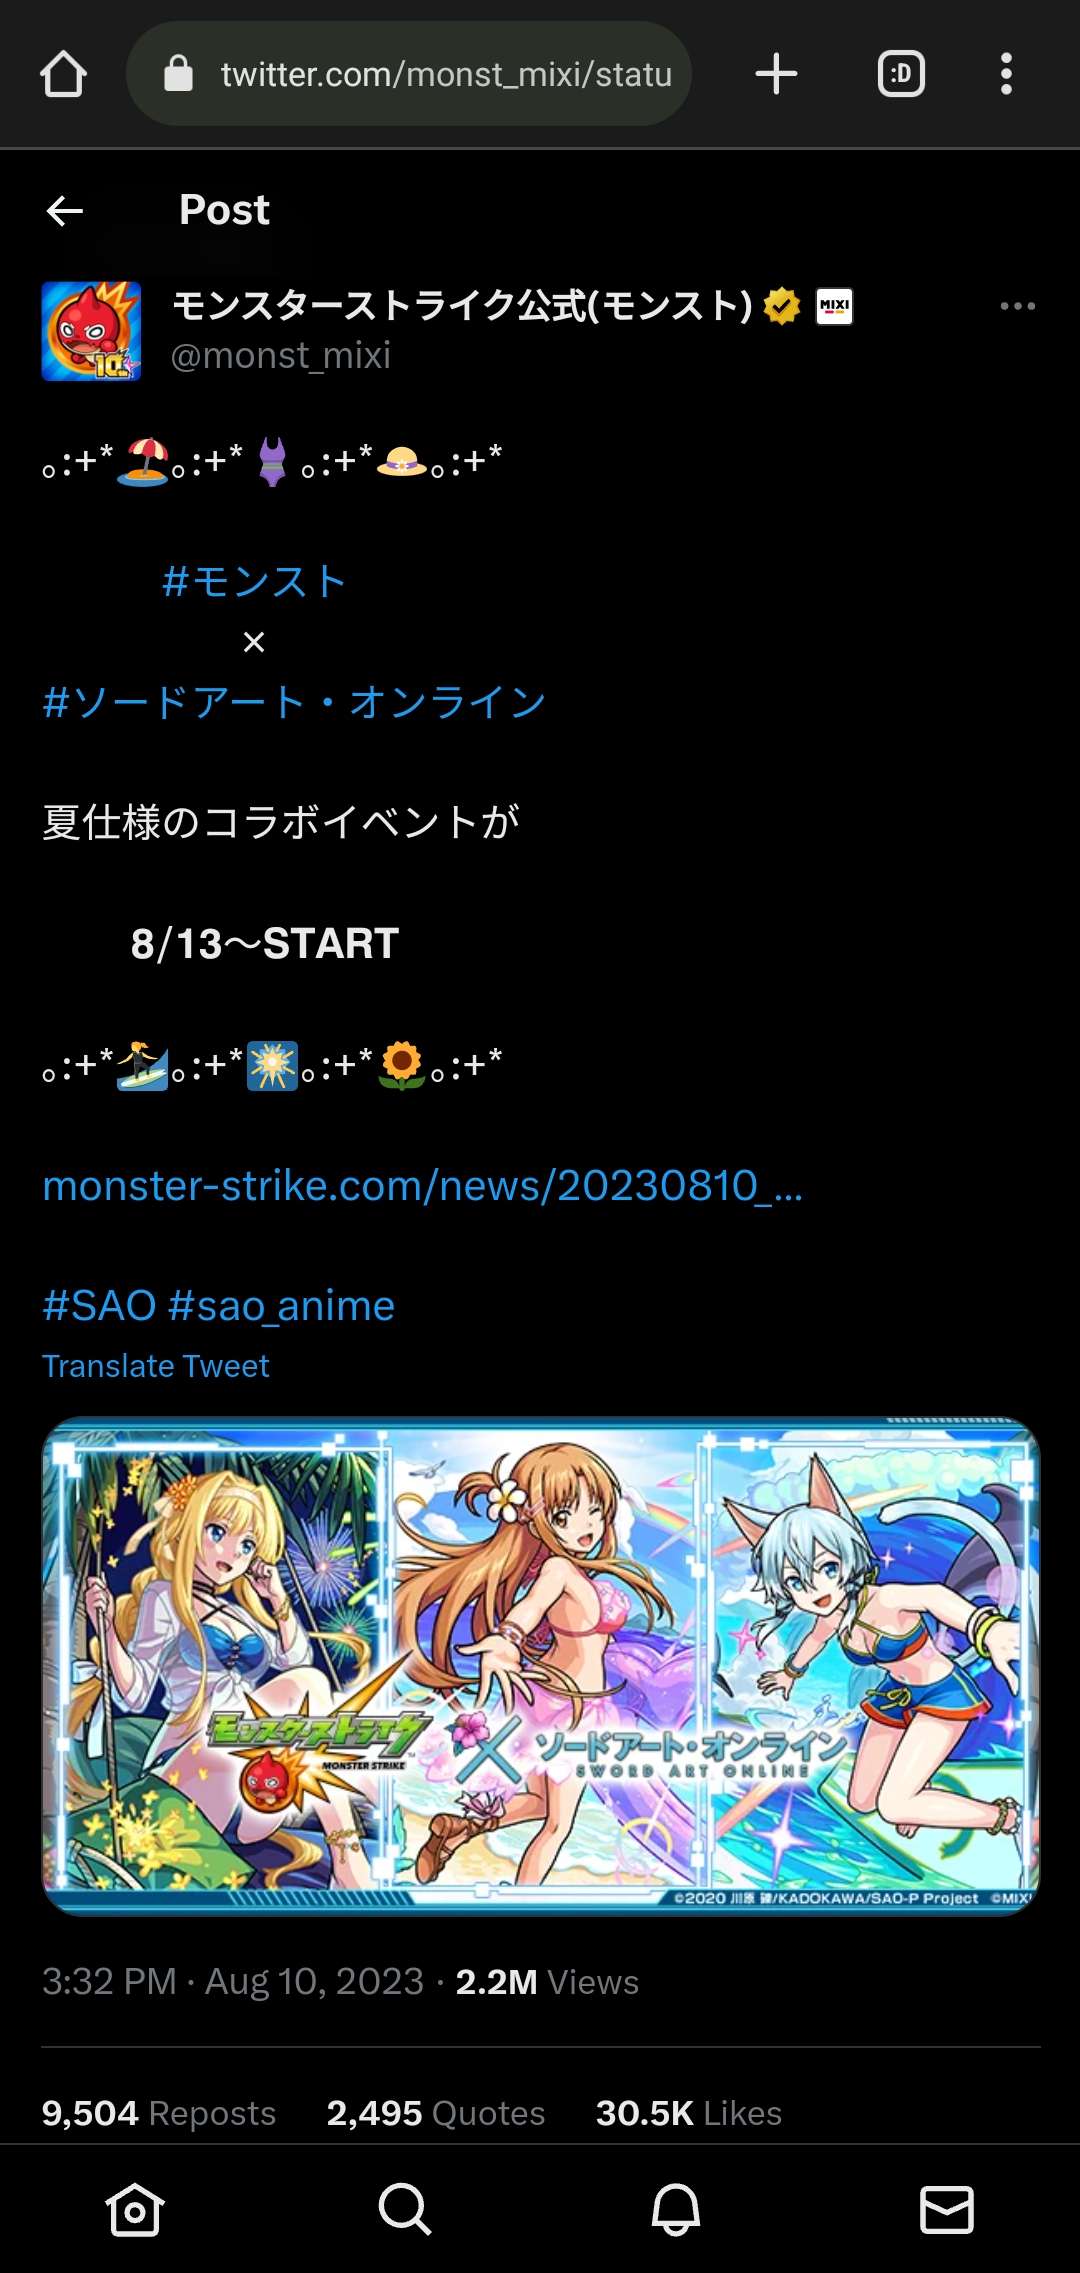 Qoo News] “Monster Strike” x “SAO” Collaboration Returns on July 17!